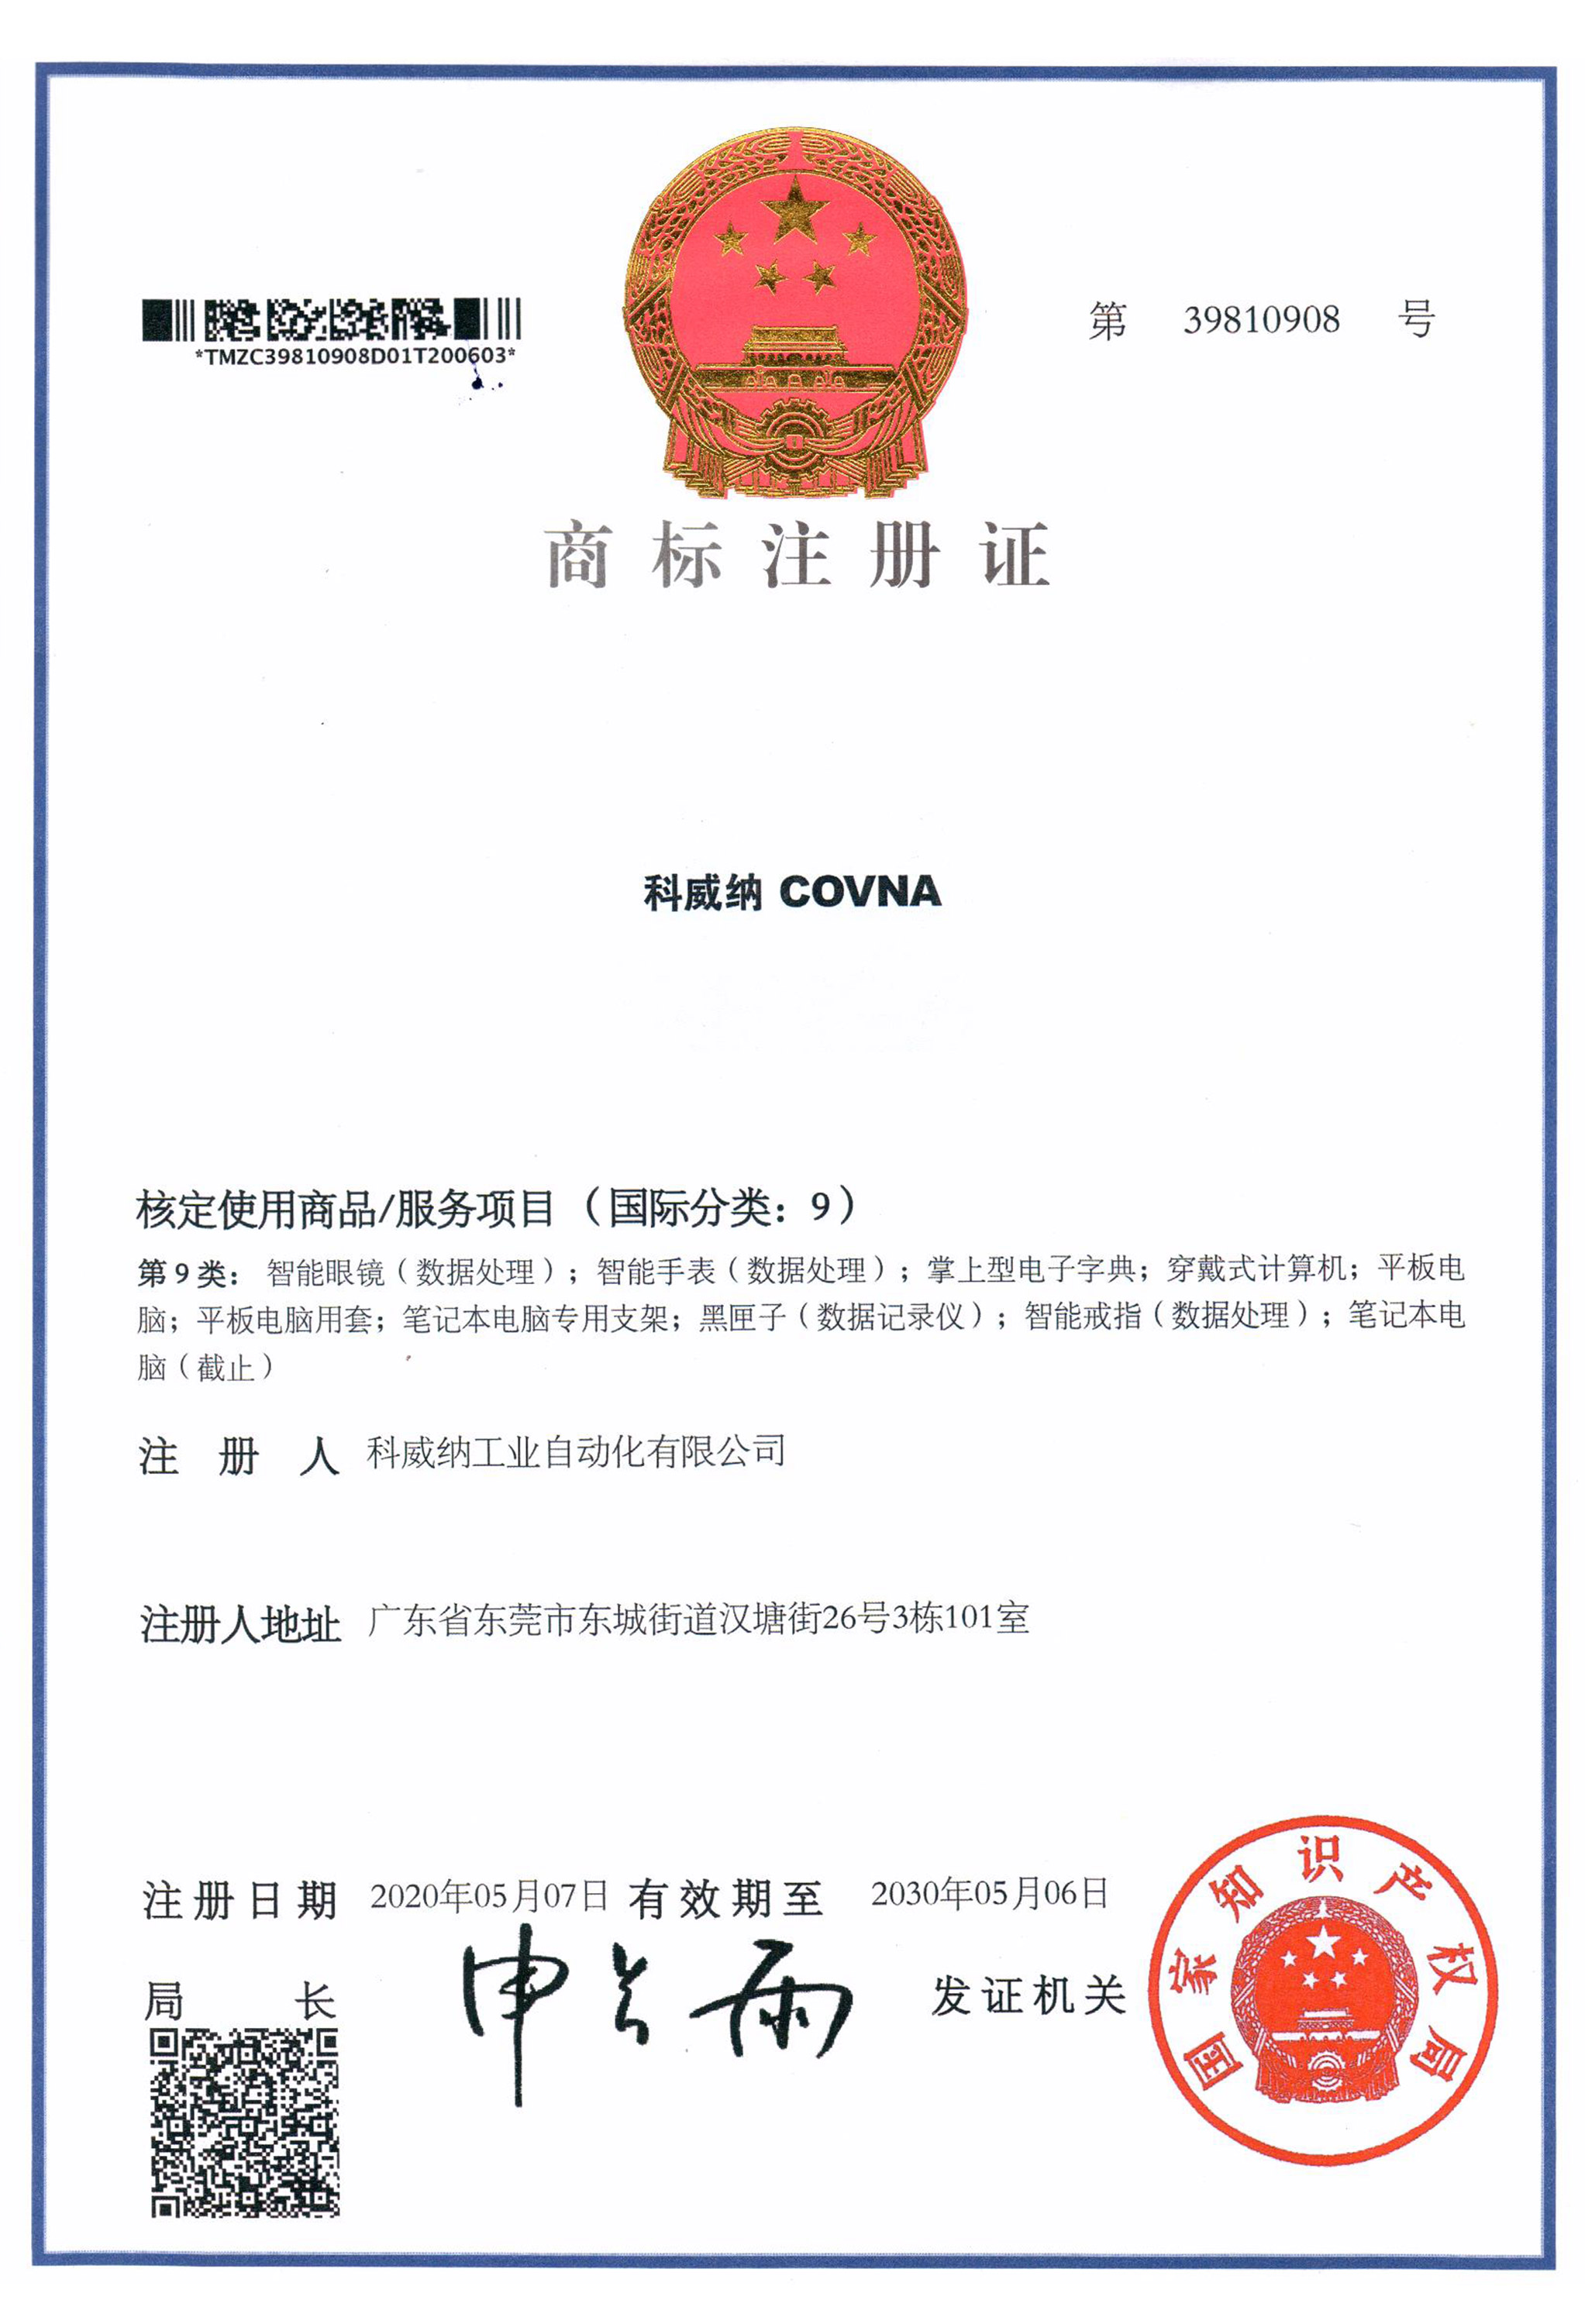 澳门尼威斯人COVNA商标证书